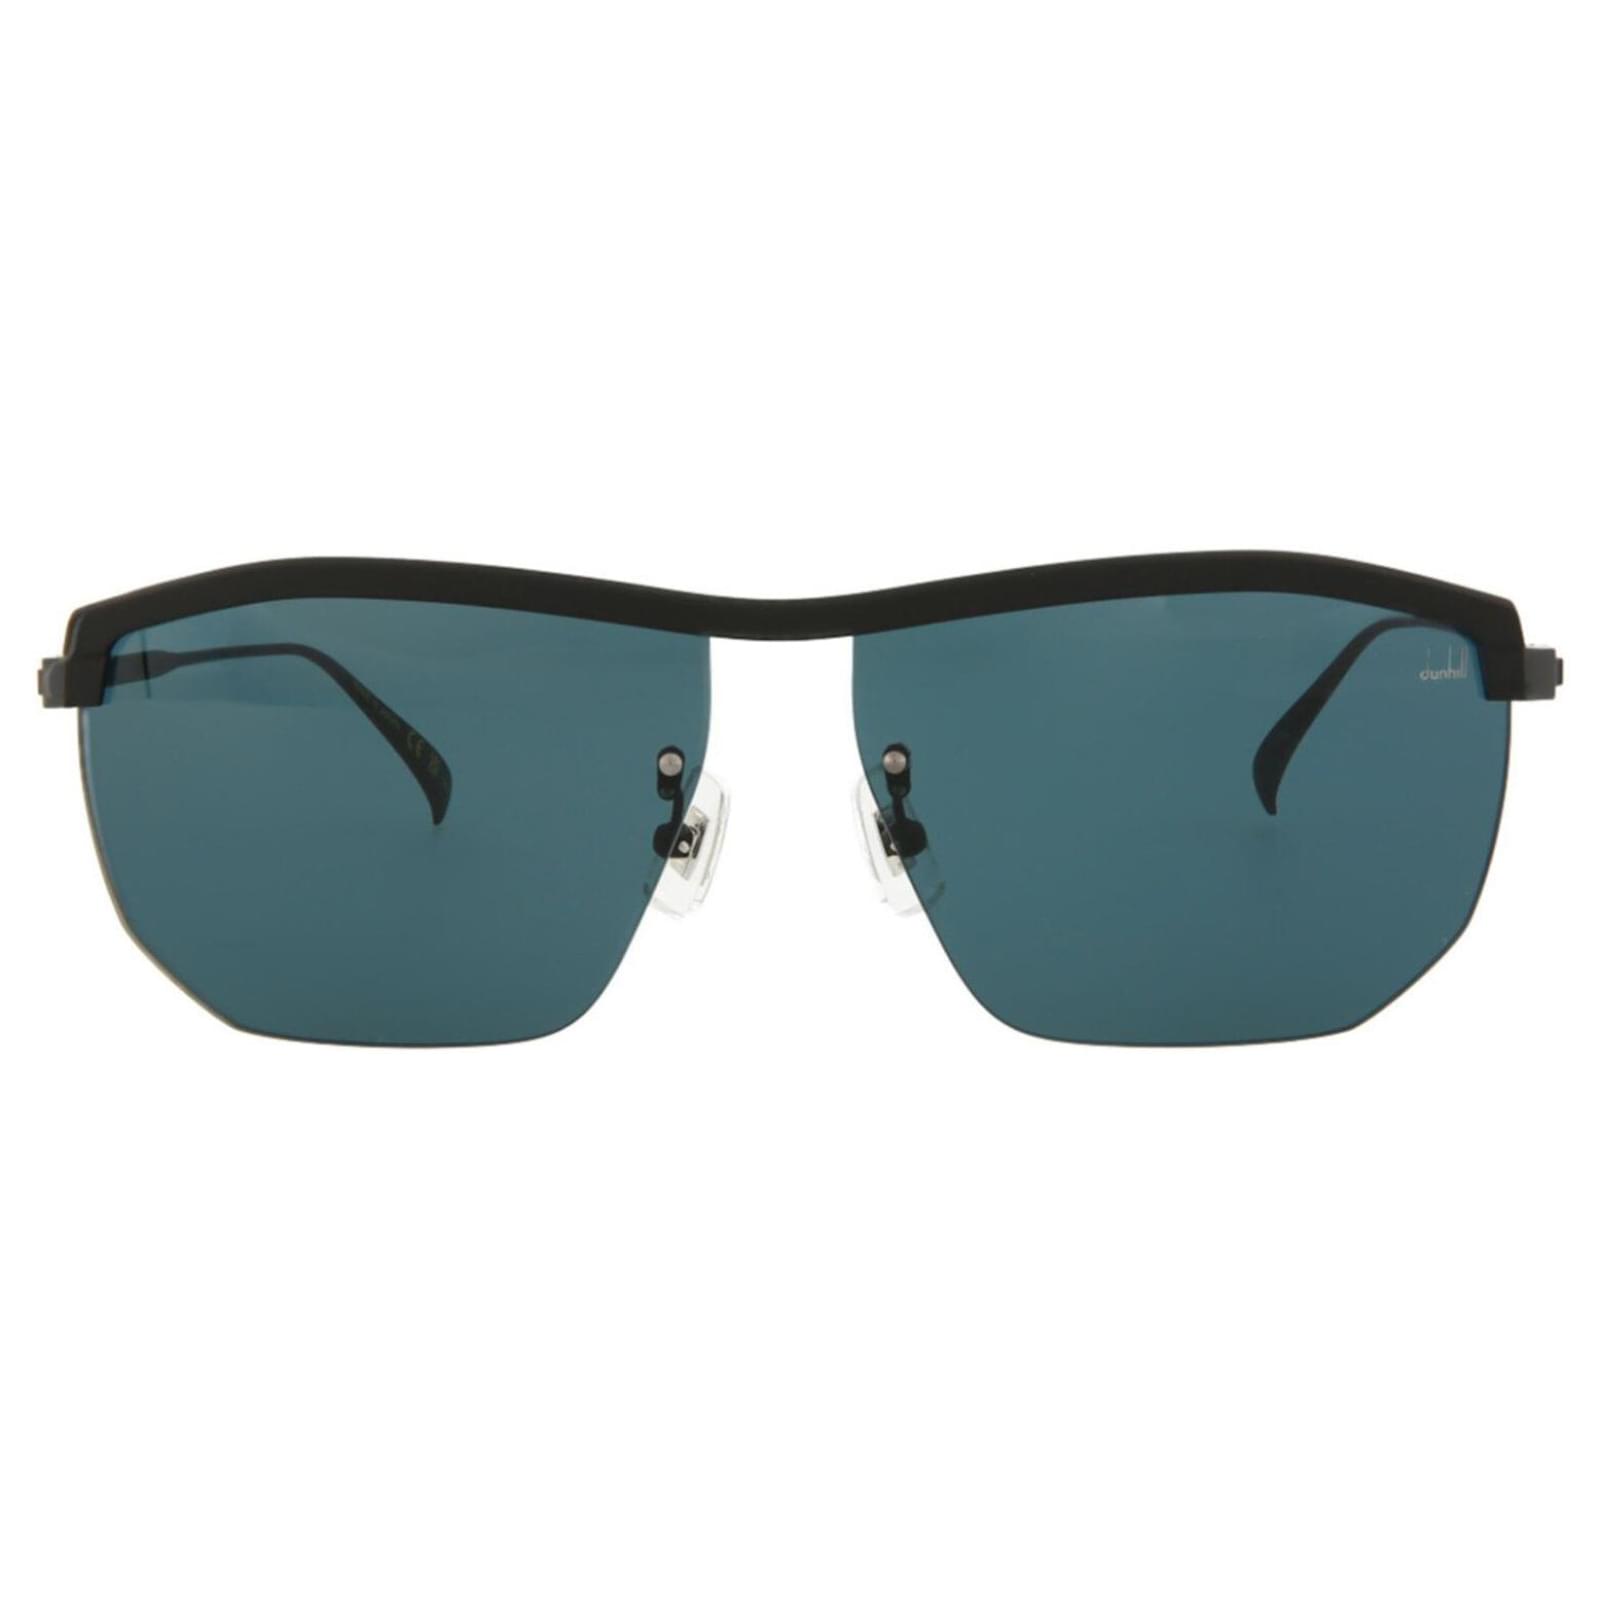 ALFRED DUNHILL 898 (57-16 140) Eyeglasses Sunglasses frame Vintage!! 20408  | eBay